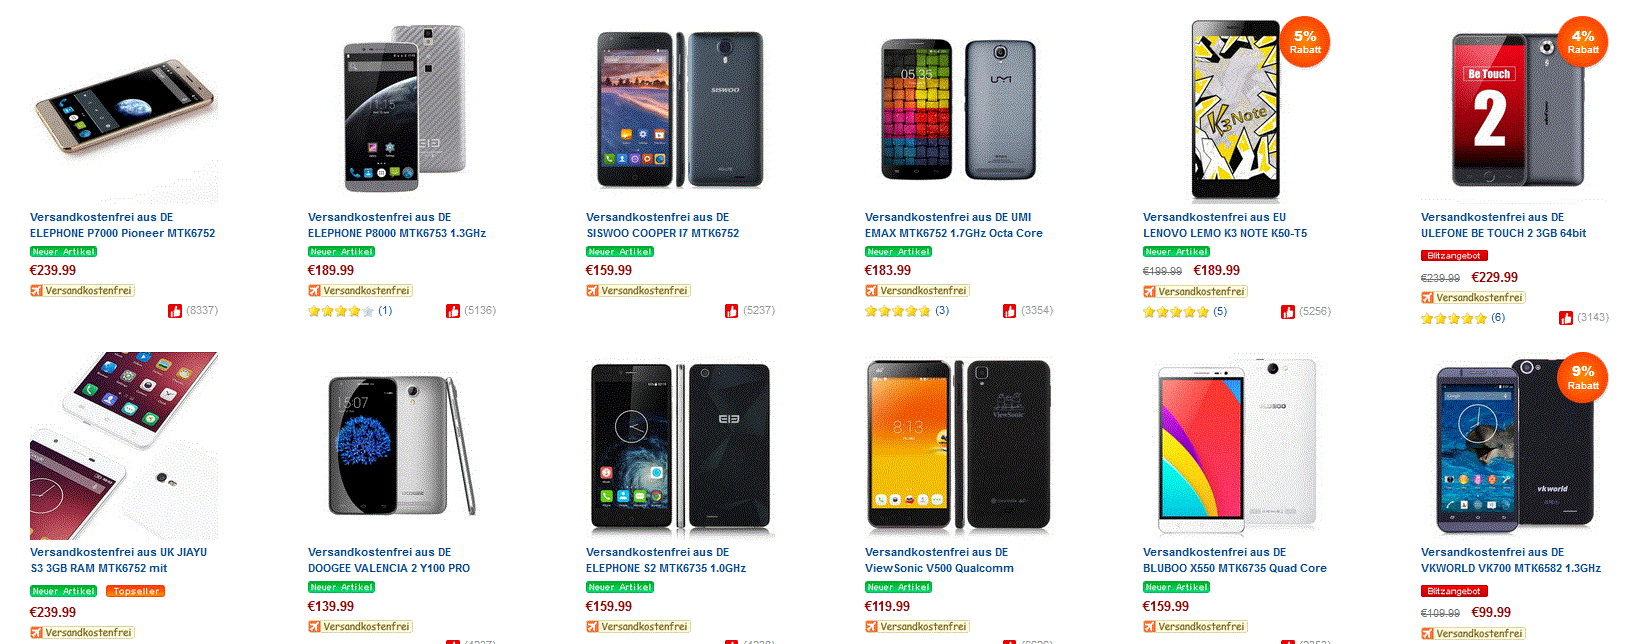 Coole China Smartphones aus Deutschland! Umi Iron, Umi Emax oder Ulefone be touch 2?